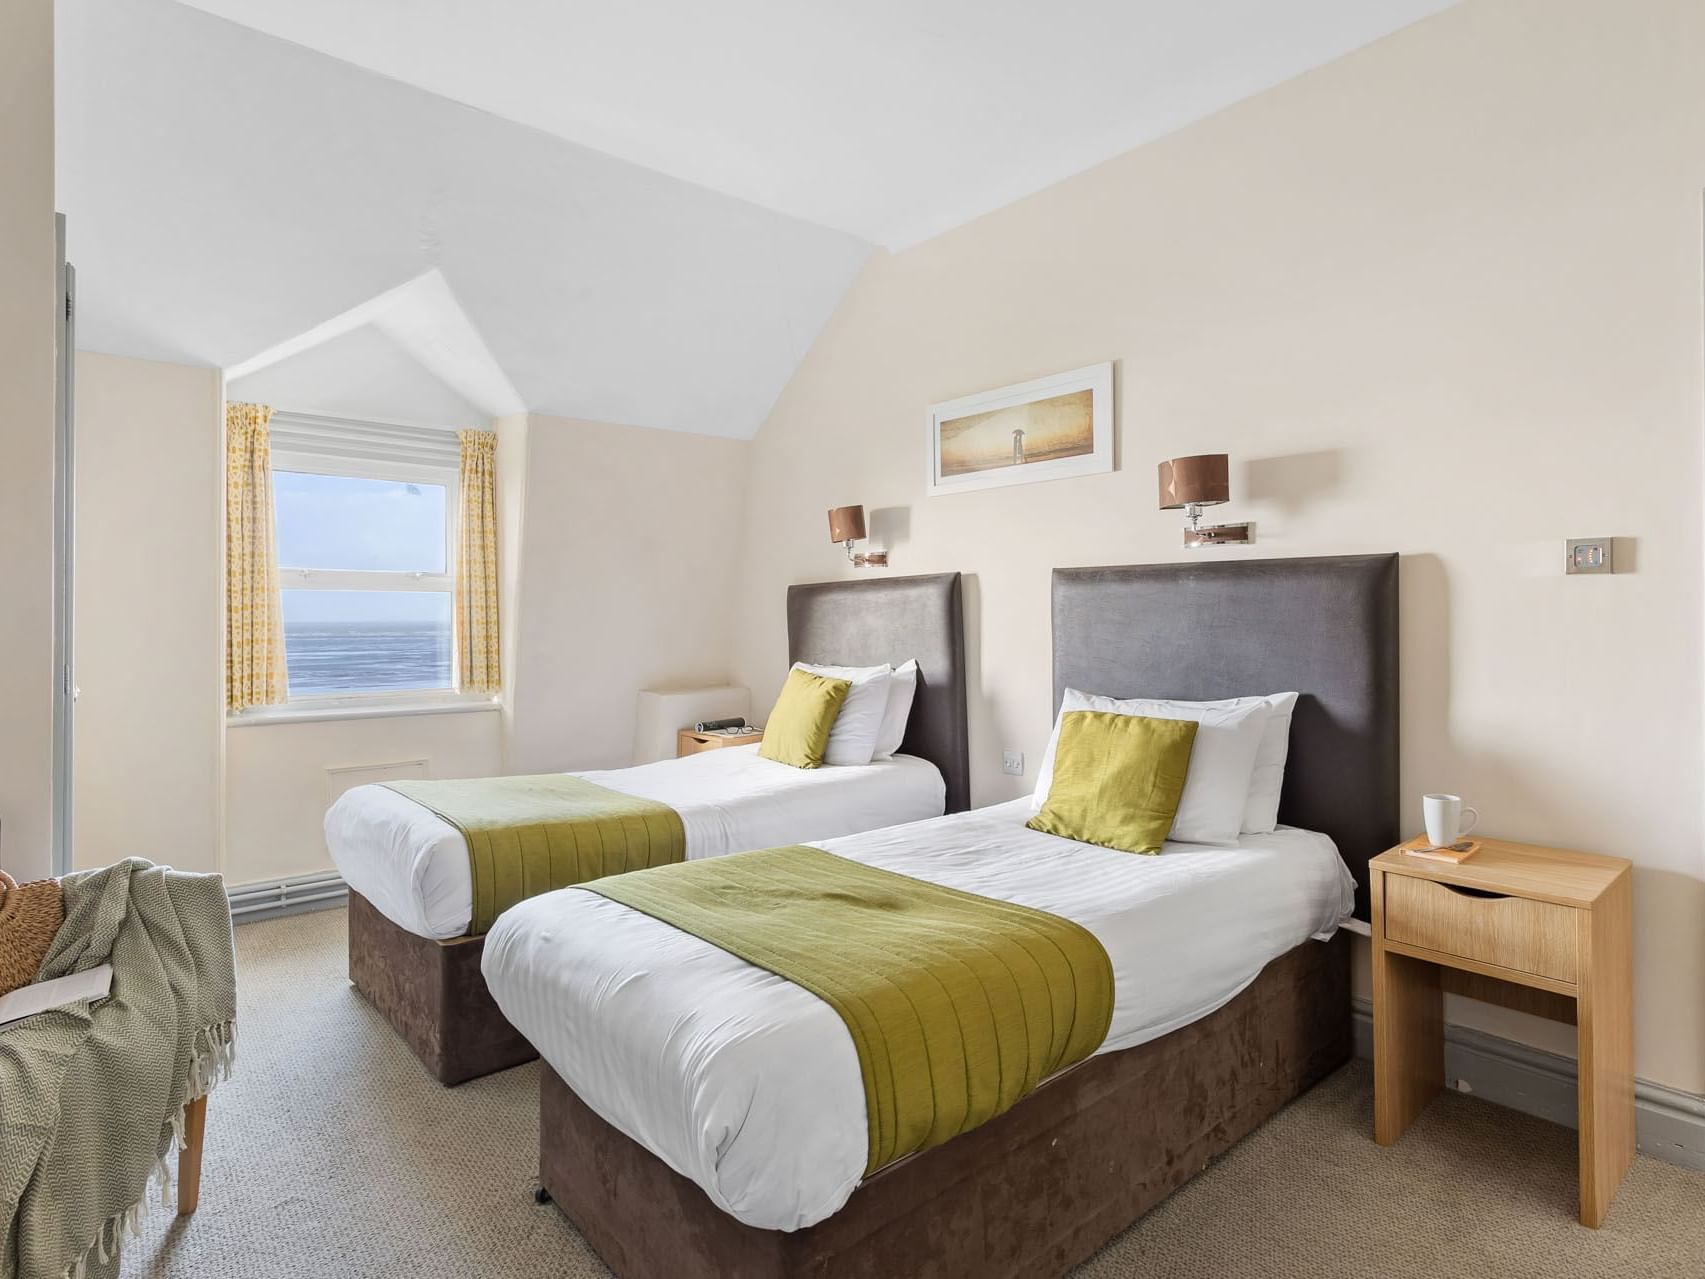 Sea View Twin Room at The Grand Atlantic Hotel in Weston-super-Mare